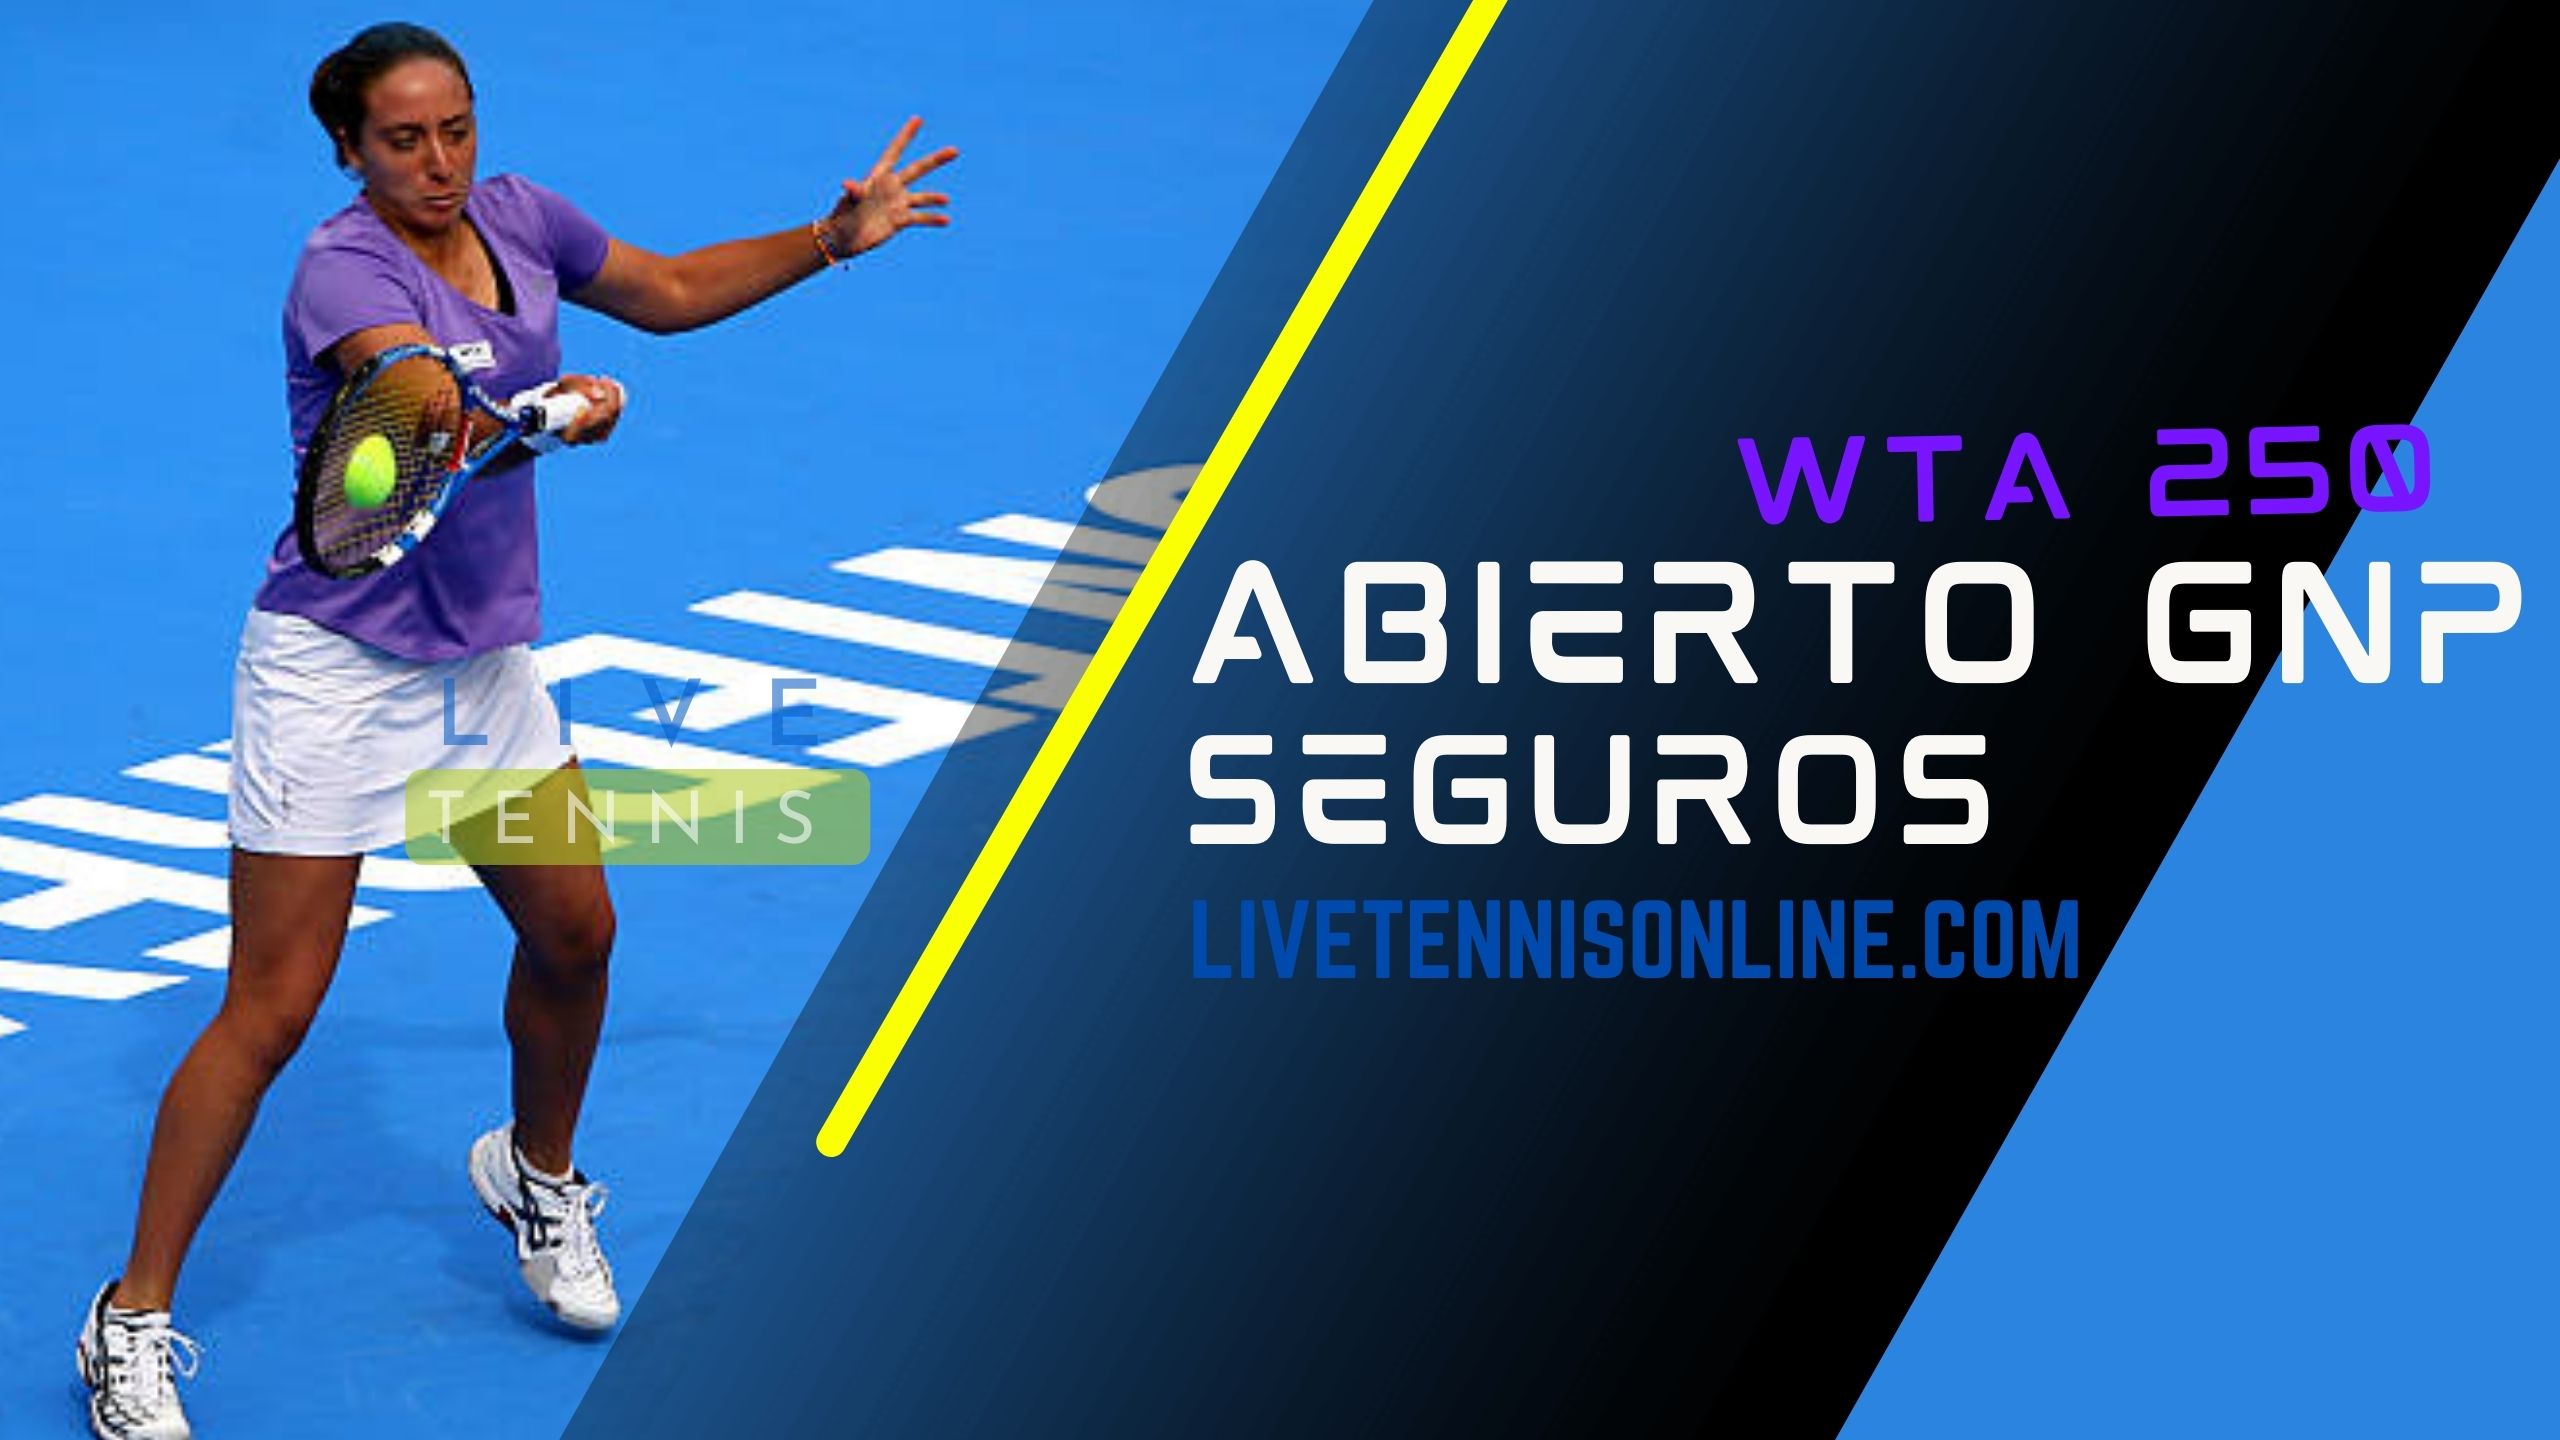 2018 WTA Abierto GNP Seguros Live Stream